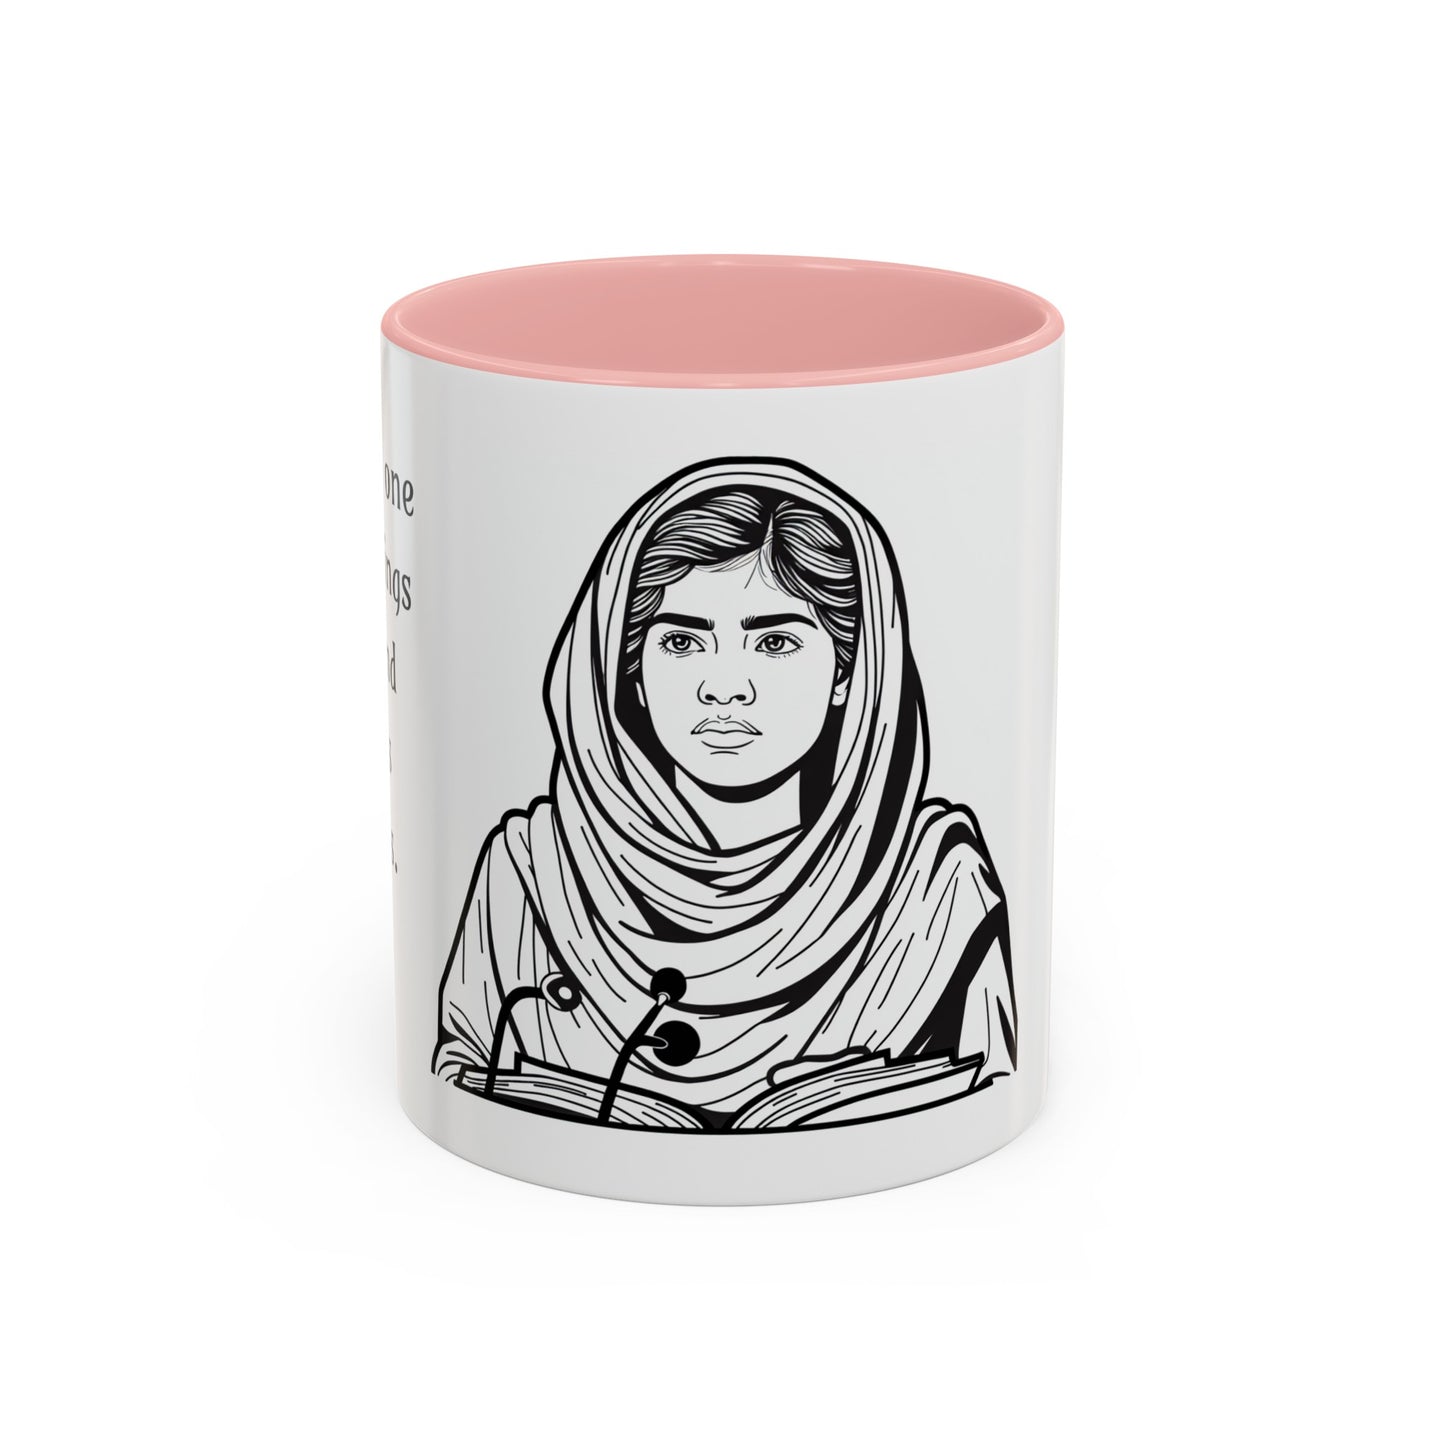 Malala Yousafzai Inspirational Coffee Mug, 11 oz or 15 oz